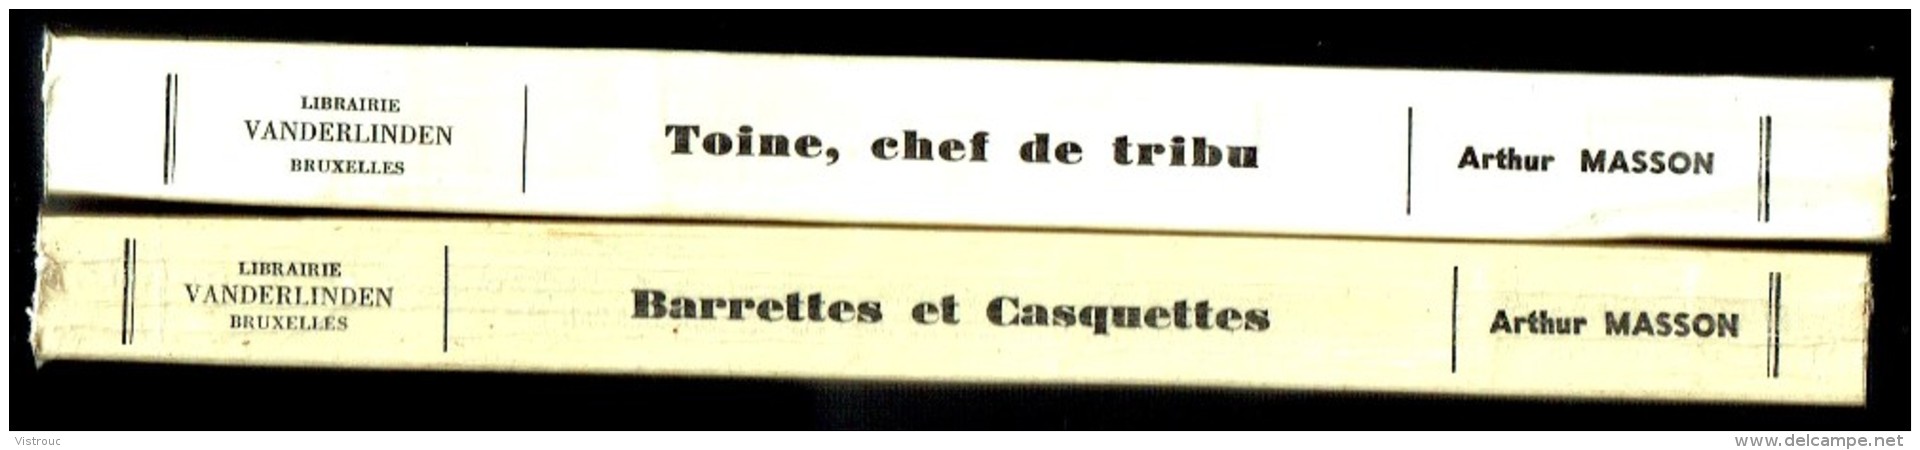 " TOINE Chef De Tribu " D'Arthur MASSON - Librairie VANDERLINDEN, Bruxelles - 1965. - Auteurs Belges